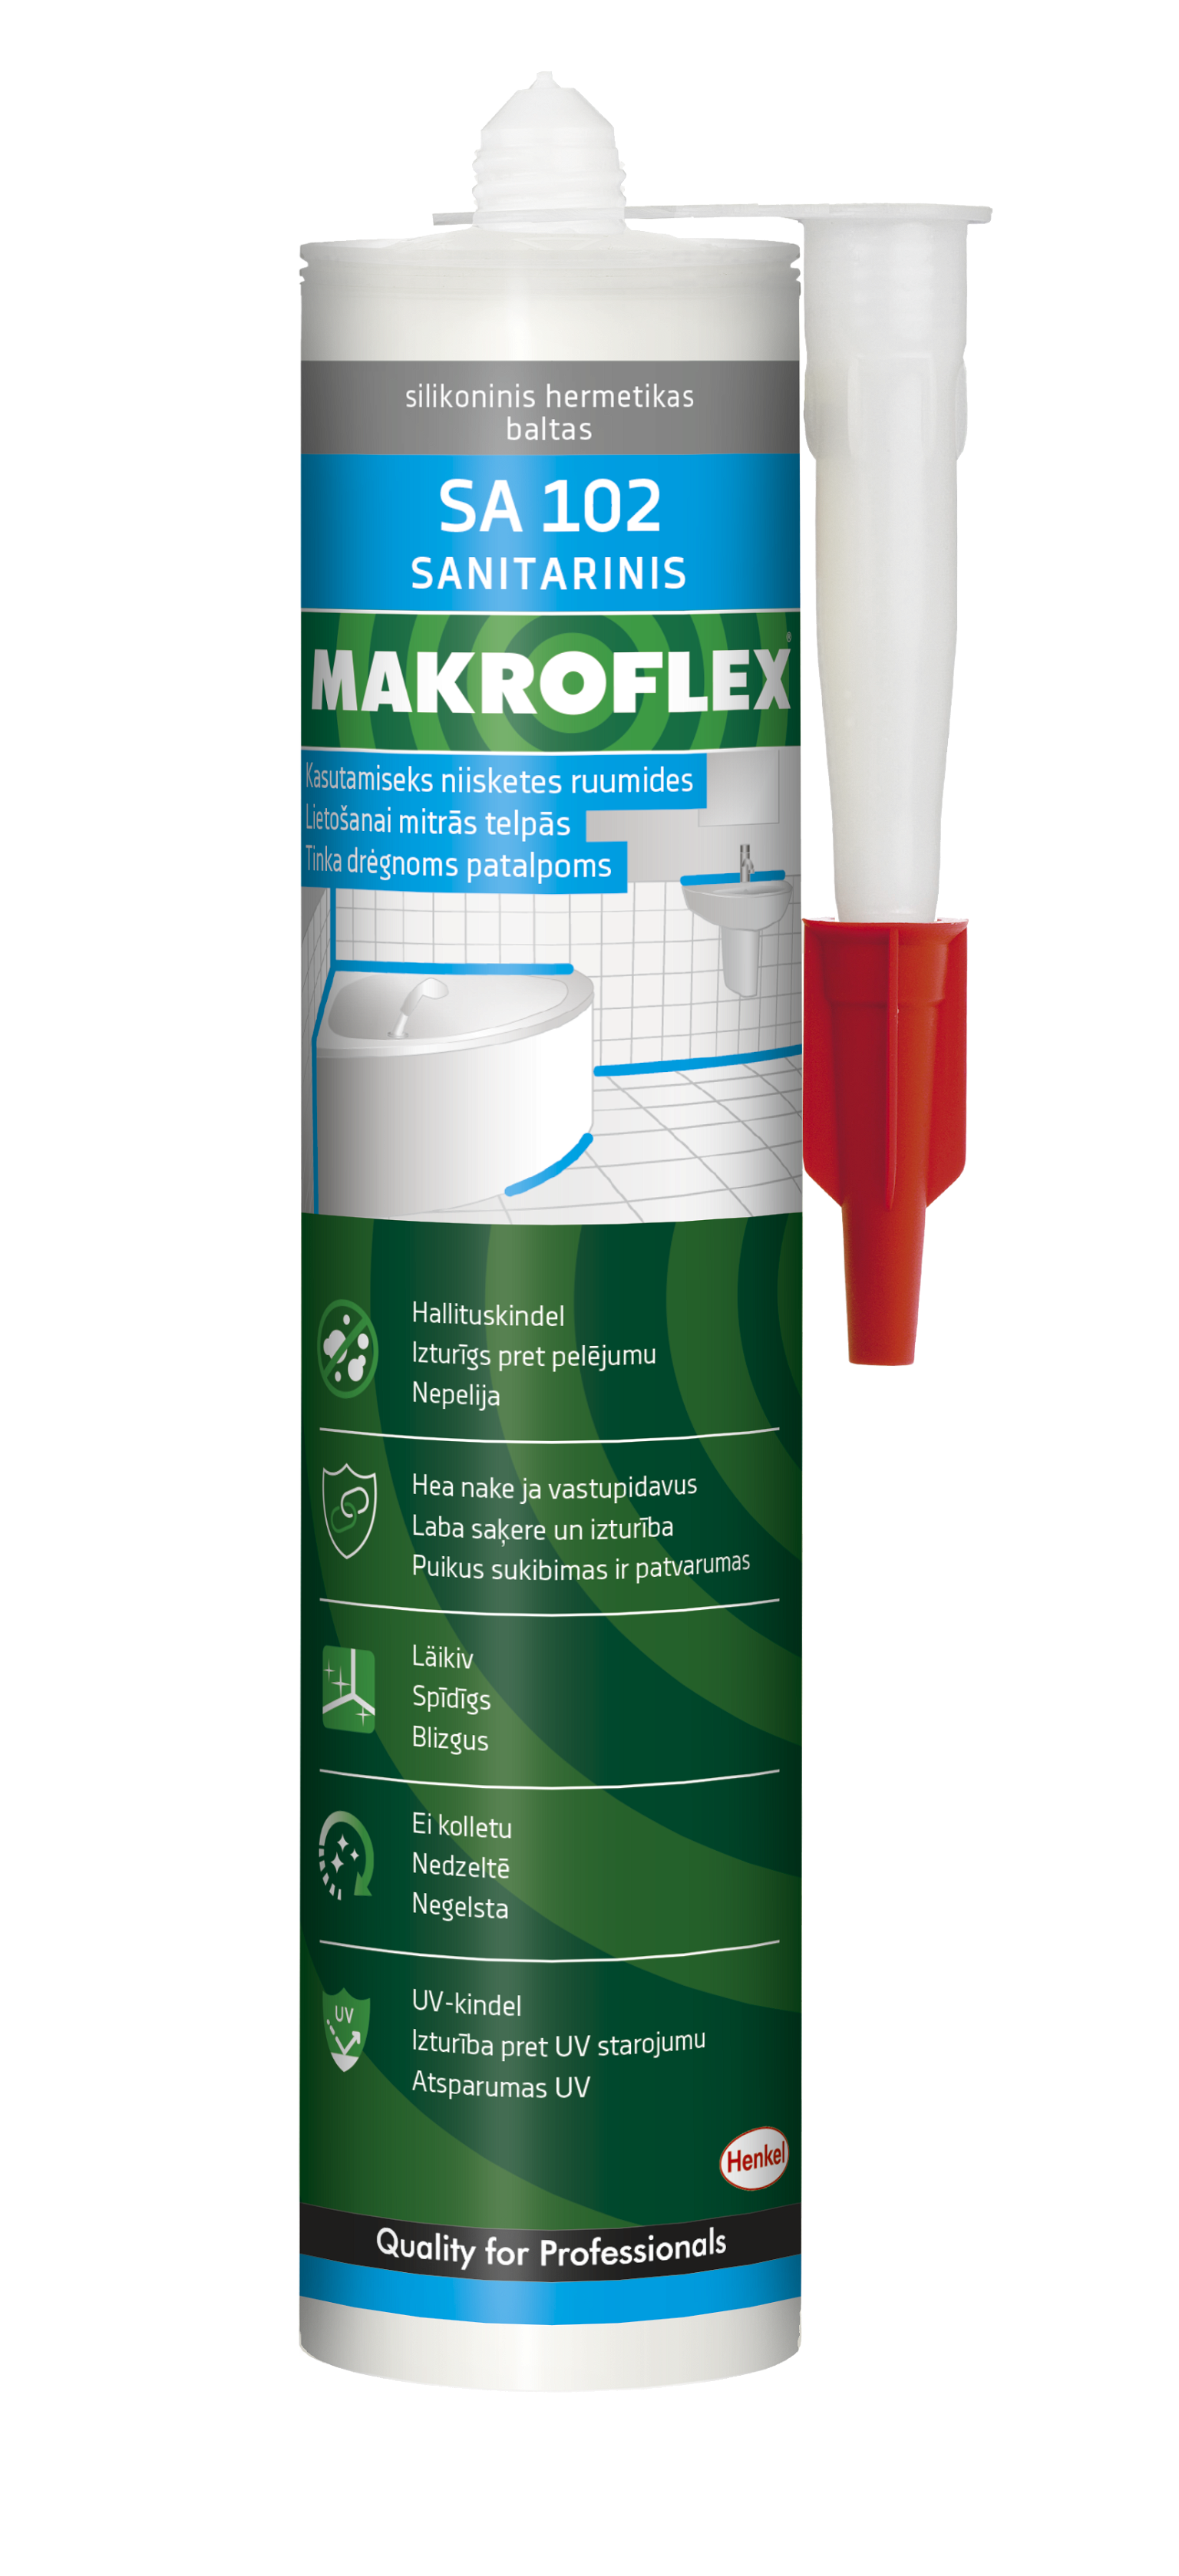 Sanitarinis silikoninis hermetikas MAKROFLEX SA102, baltos sp., 300 ml